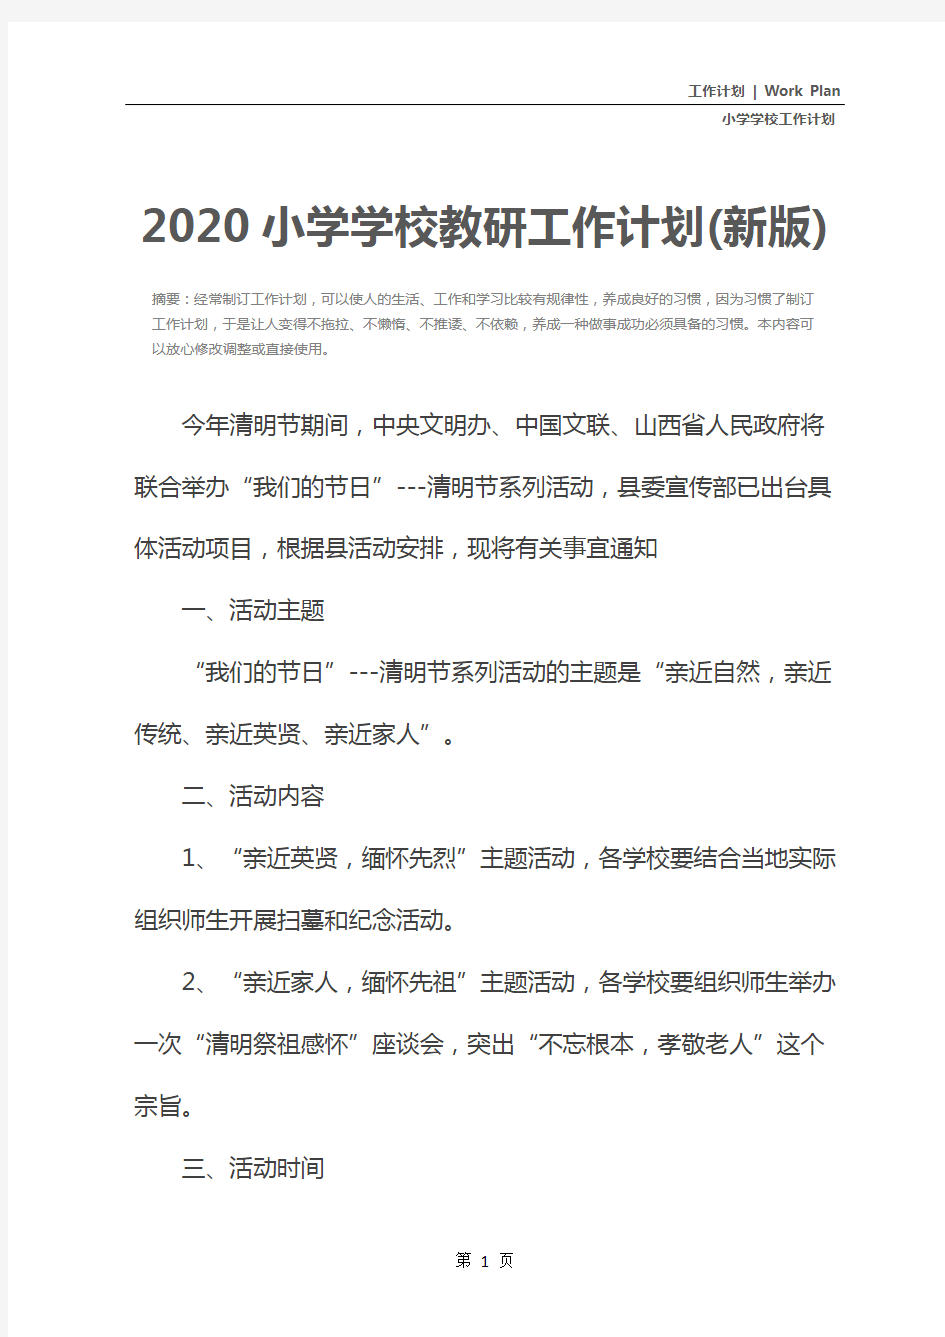 2020小学学校教研工作计划(新版)